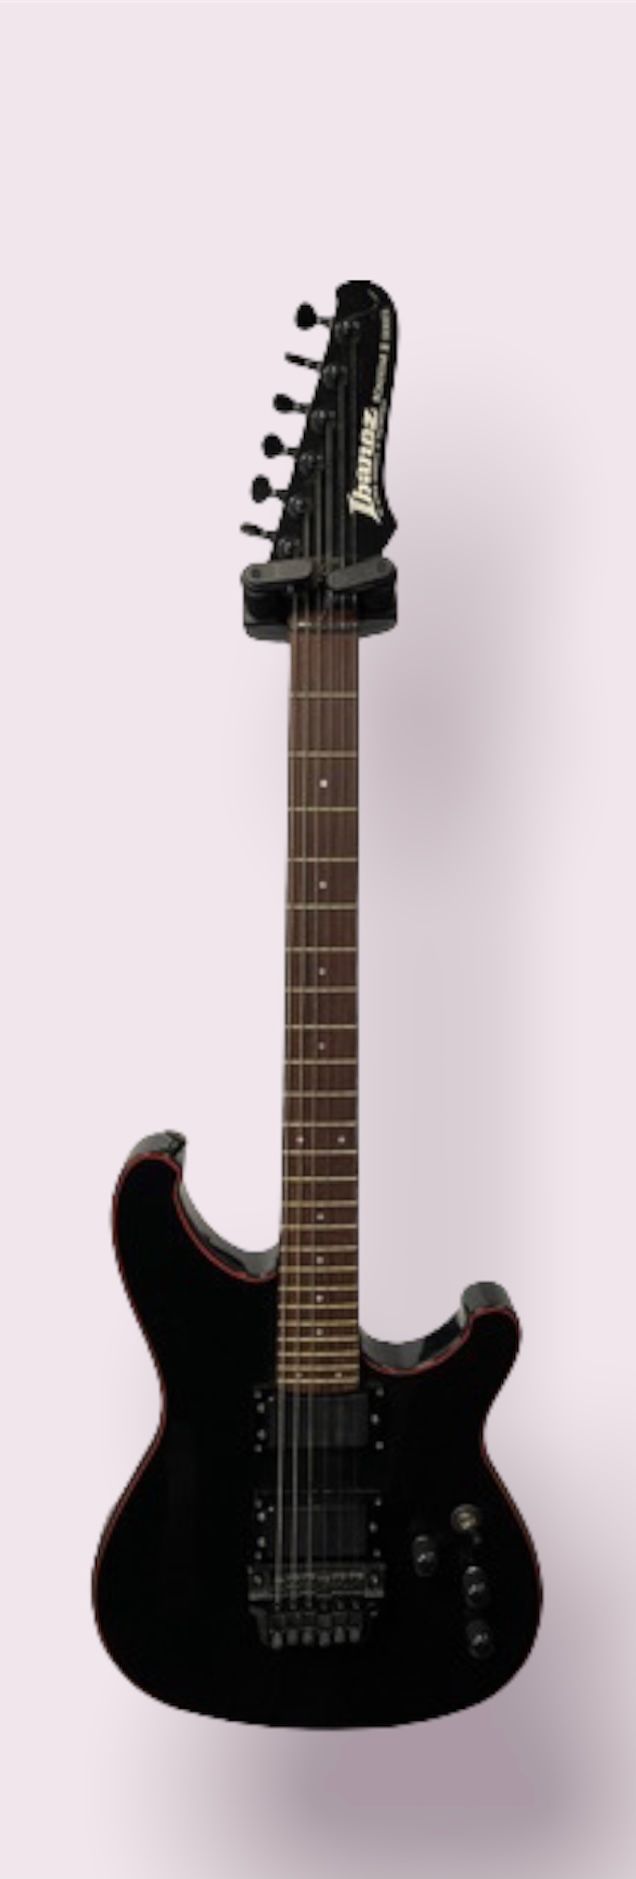 Null 电吉他，IBANEZ型Roastar II系列

黑色带红色镶边，日本制造，编号E852734

(不含揉弦杆，有一些磨损的痕迹)

带着棕色的箱子